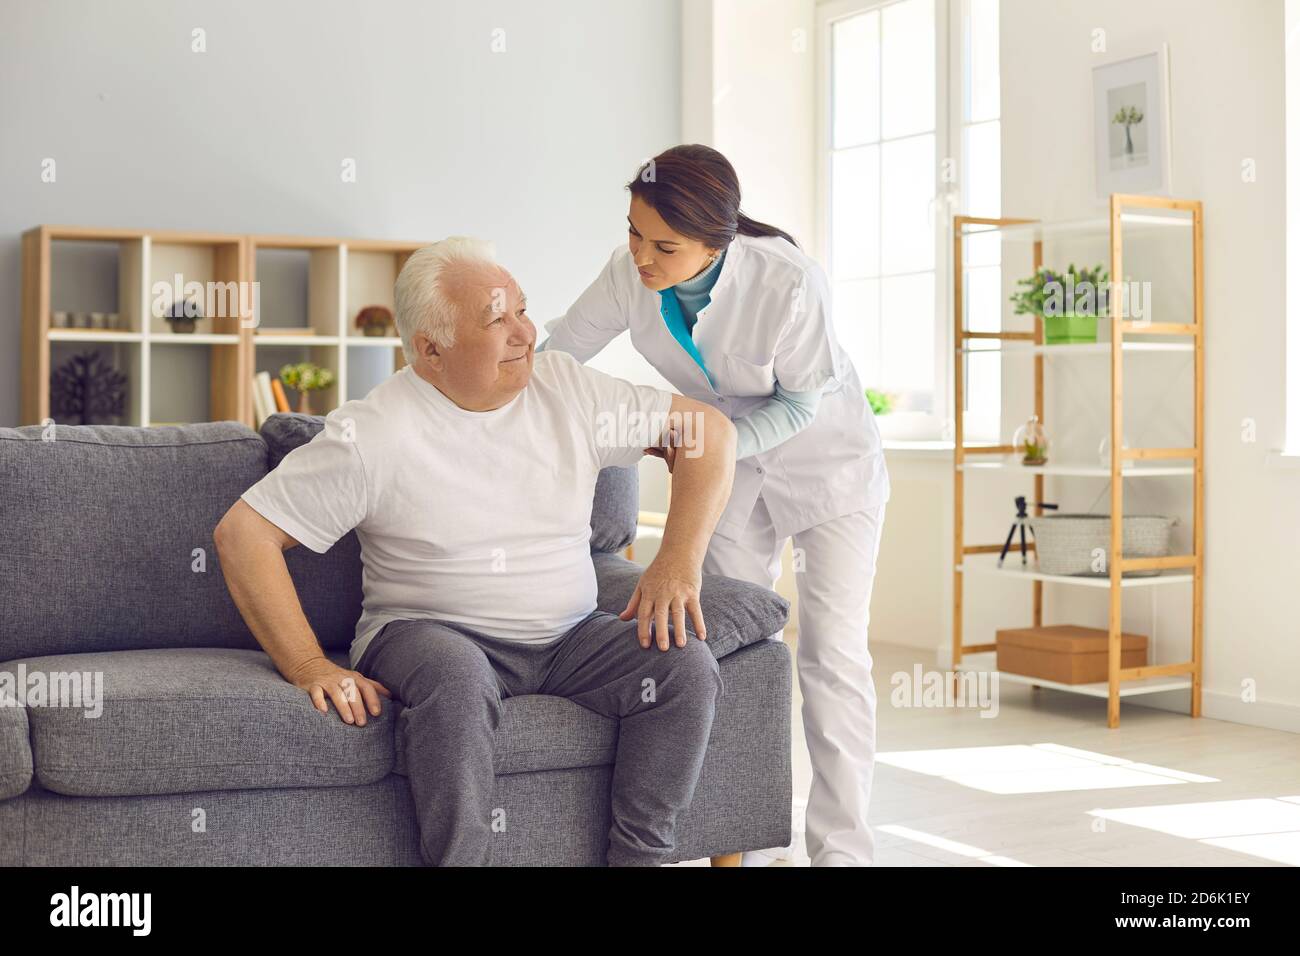 Infermiera che aiuta l'uomo anziano a levarsi in piedi in su dal divano dentro moderno ospedale o centro di riabilitazione geriatrica Foto Stock